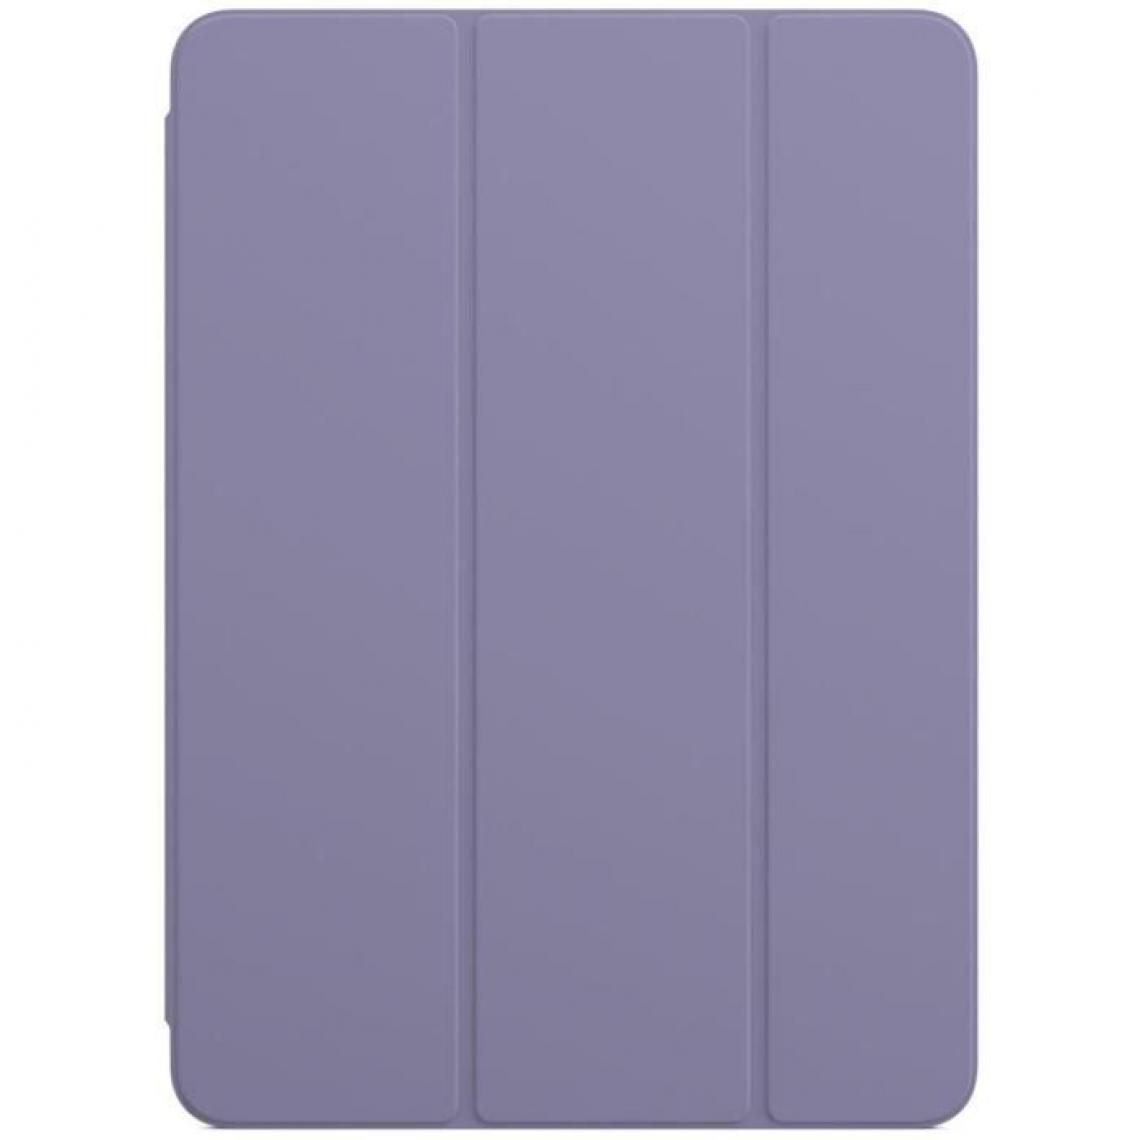 Apple - Smart Folio pour iPad Pro 11 pouces (3? génération) - Lavande anglaise - iPad